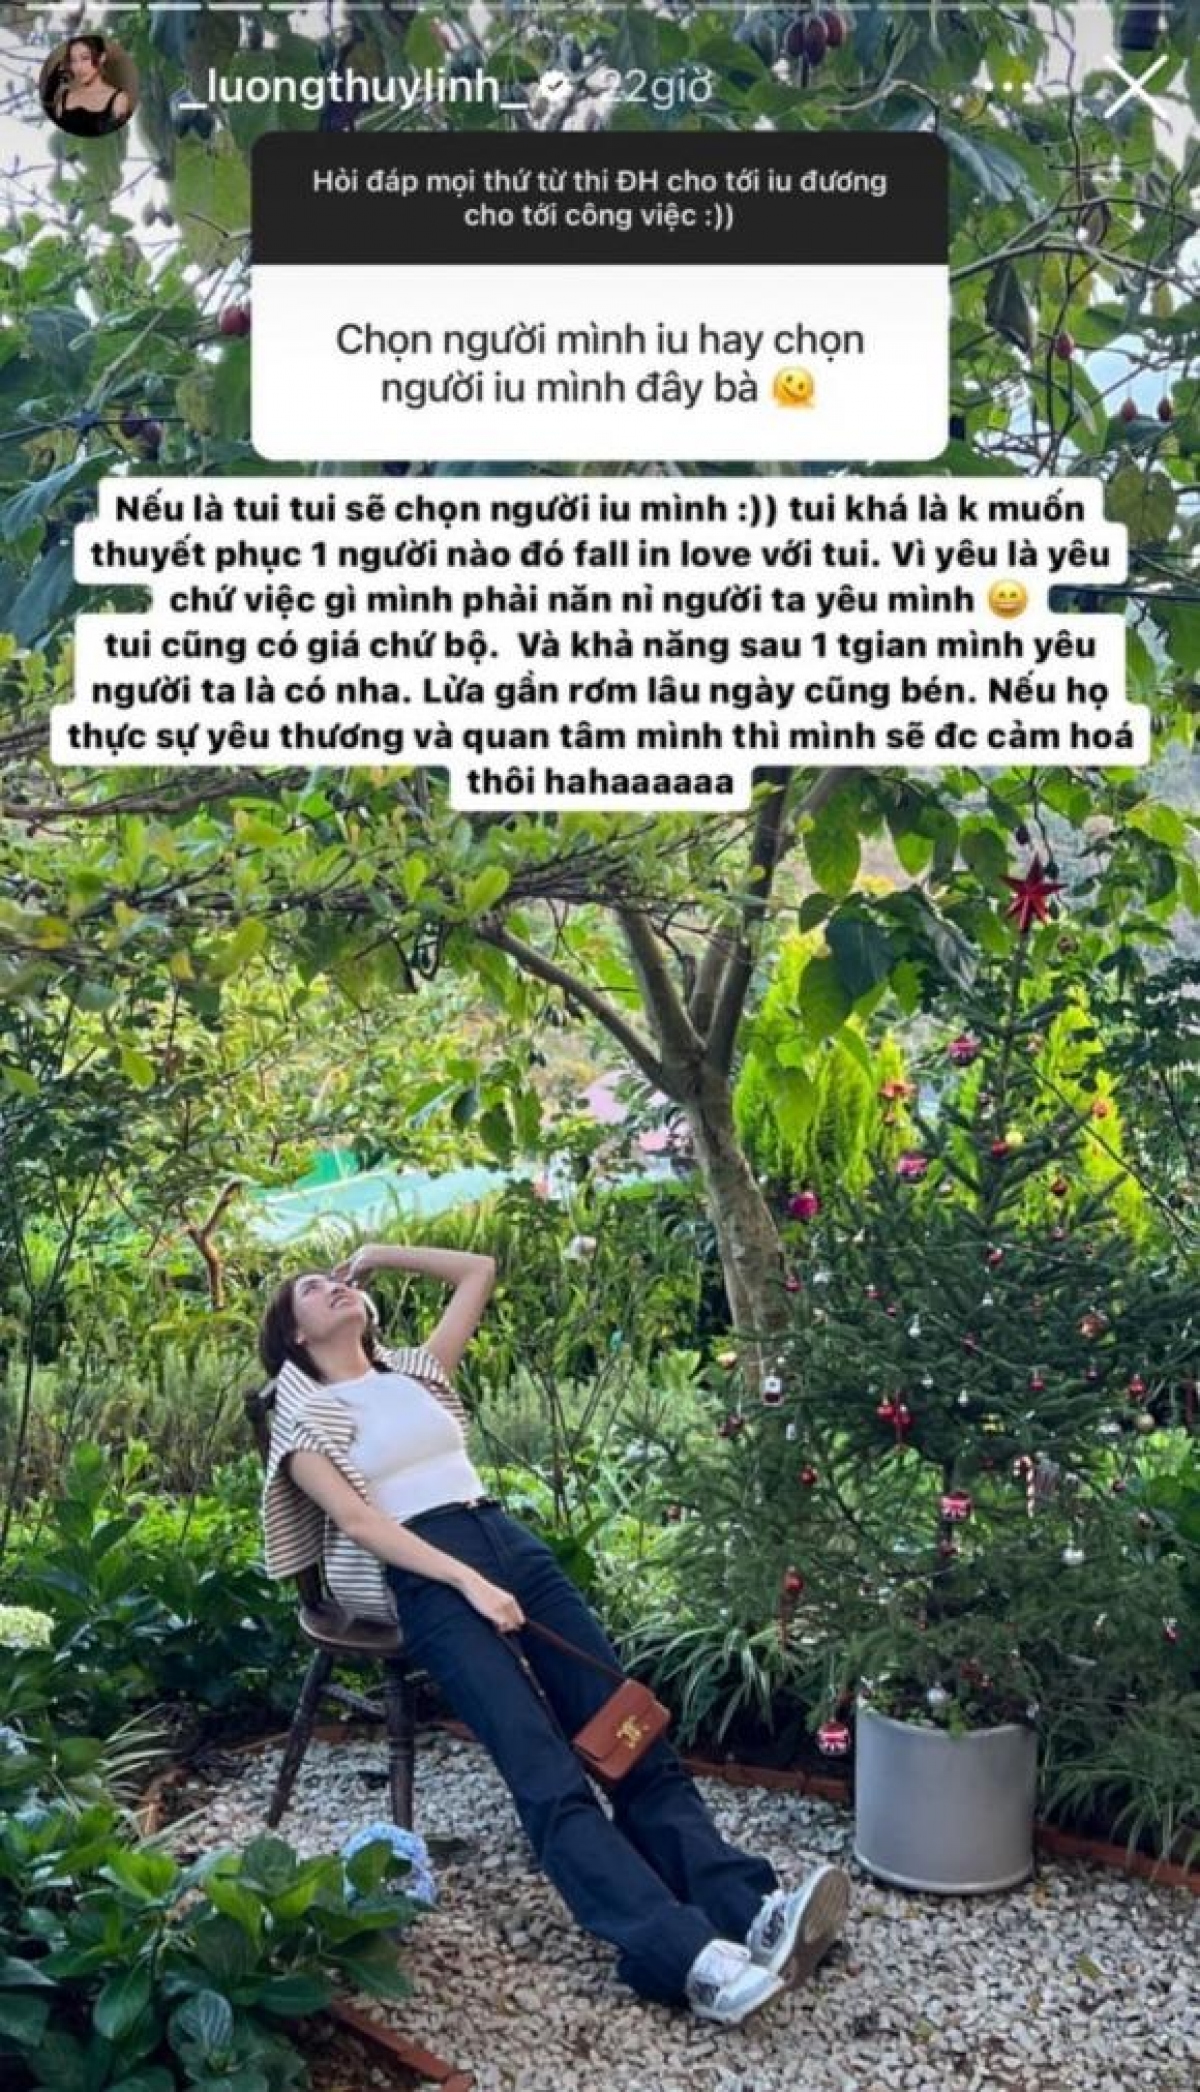 Hoa hậu Lương Thùy Linh bất ngờ chia sẻ quan điểm về tình yêu - Ảnh 1.